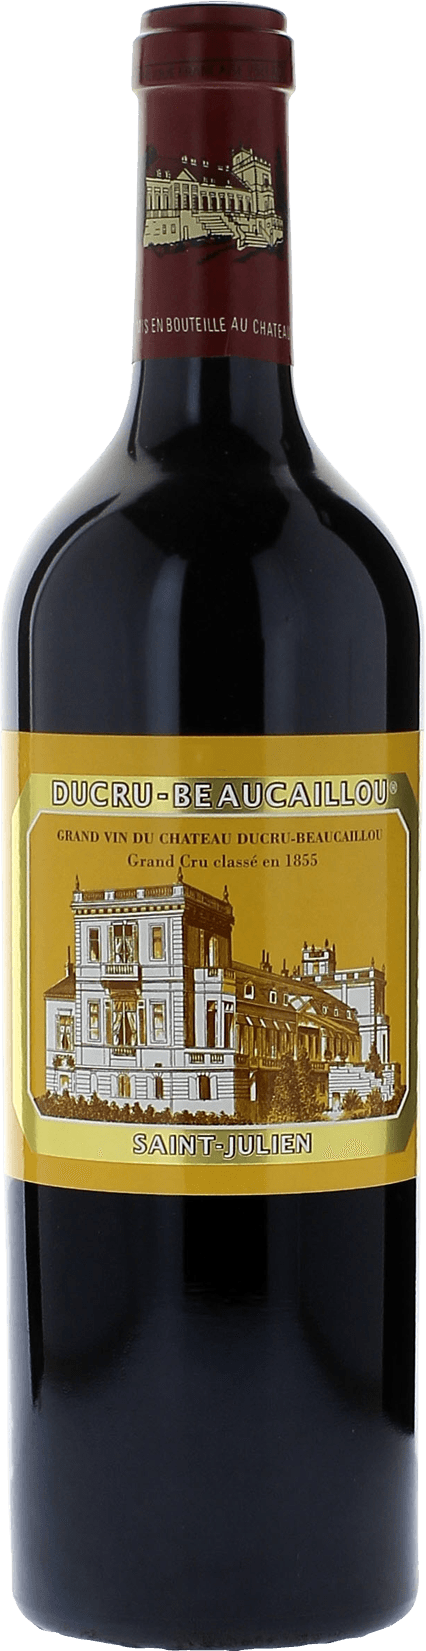 Ducru beaucaillou 2015 2me Grand cru class Saint-Julien, Bordeaux rouge